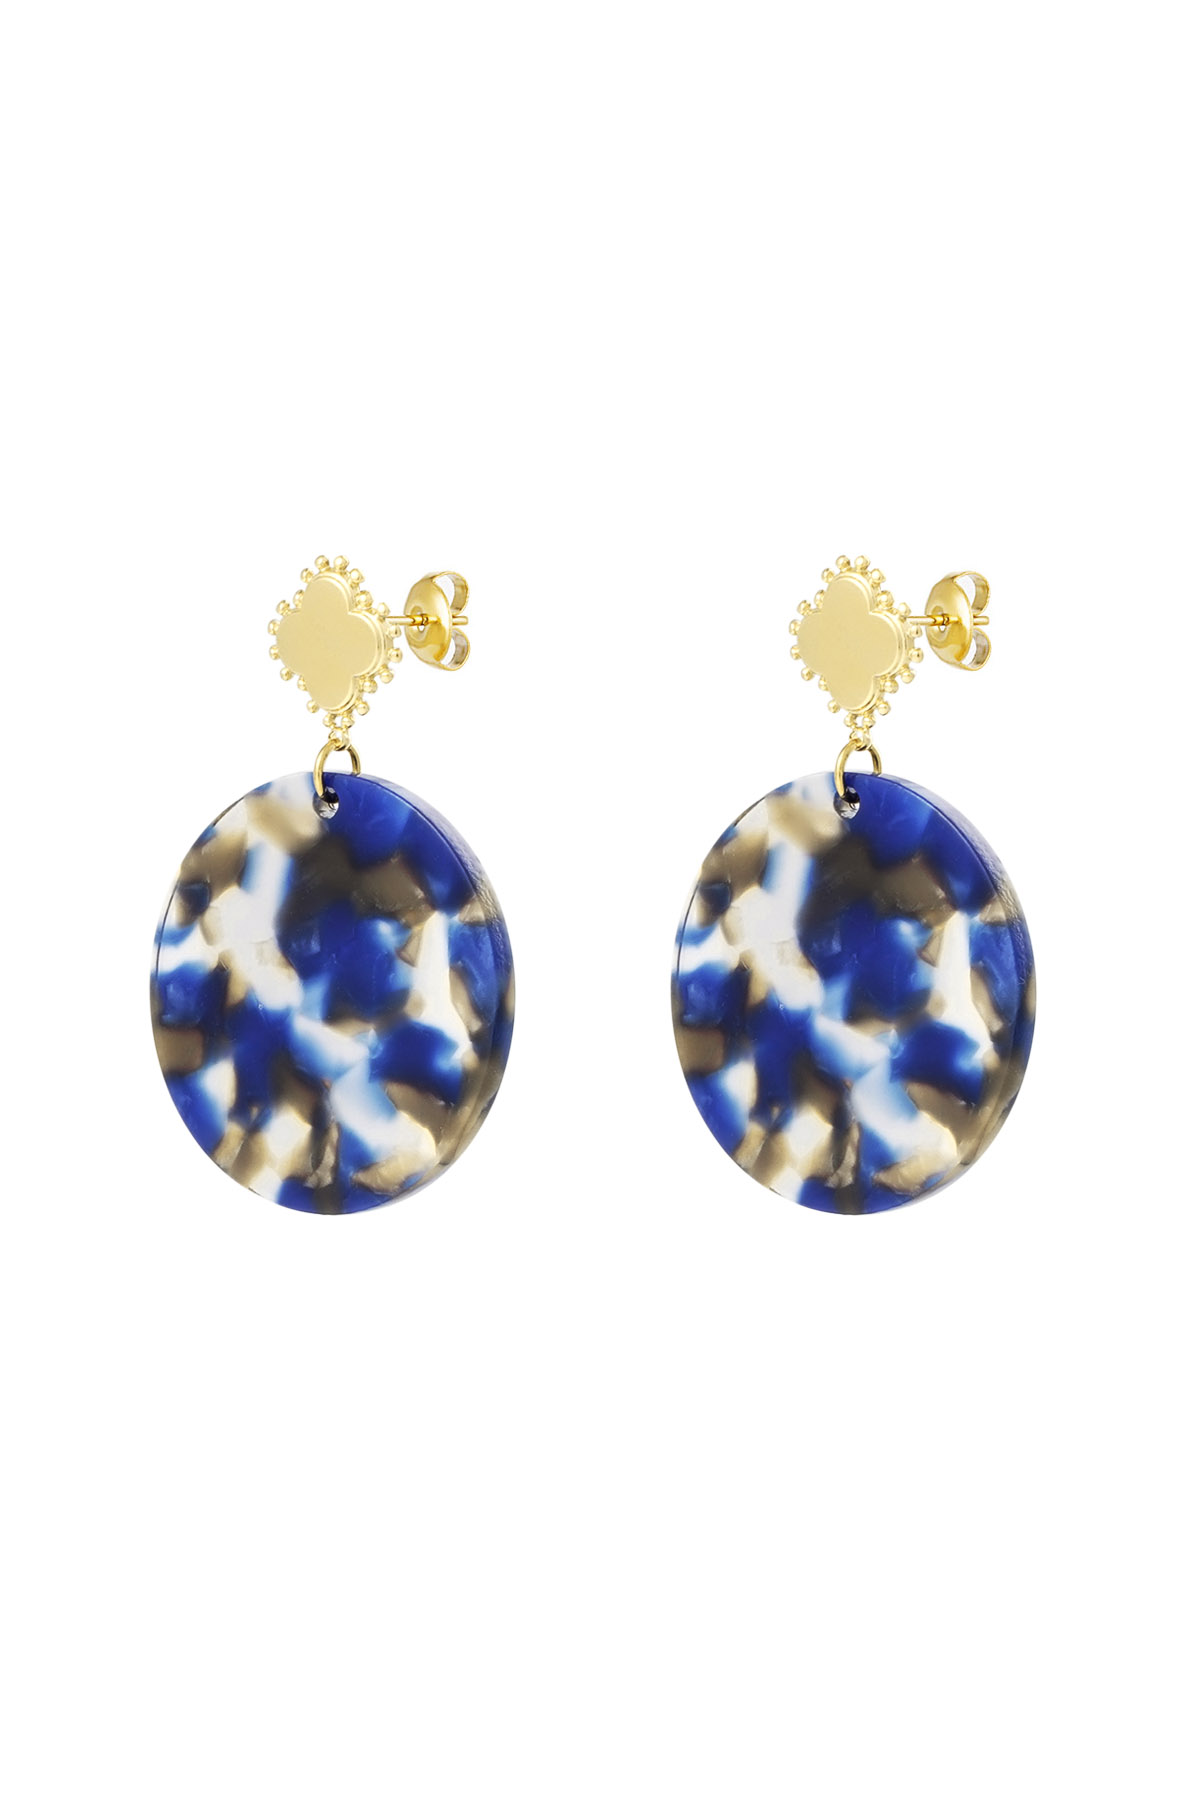 Ohrringe Kleeblatt mit Kreis - Gold/Blau 